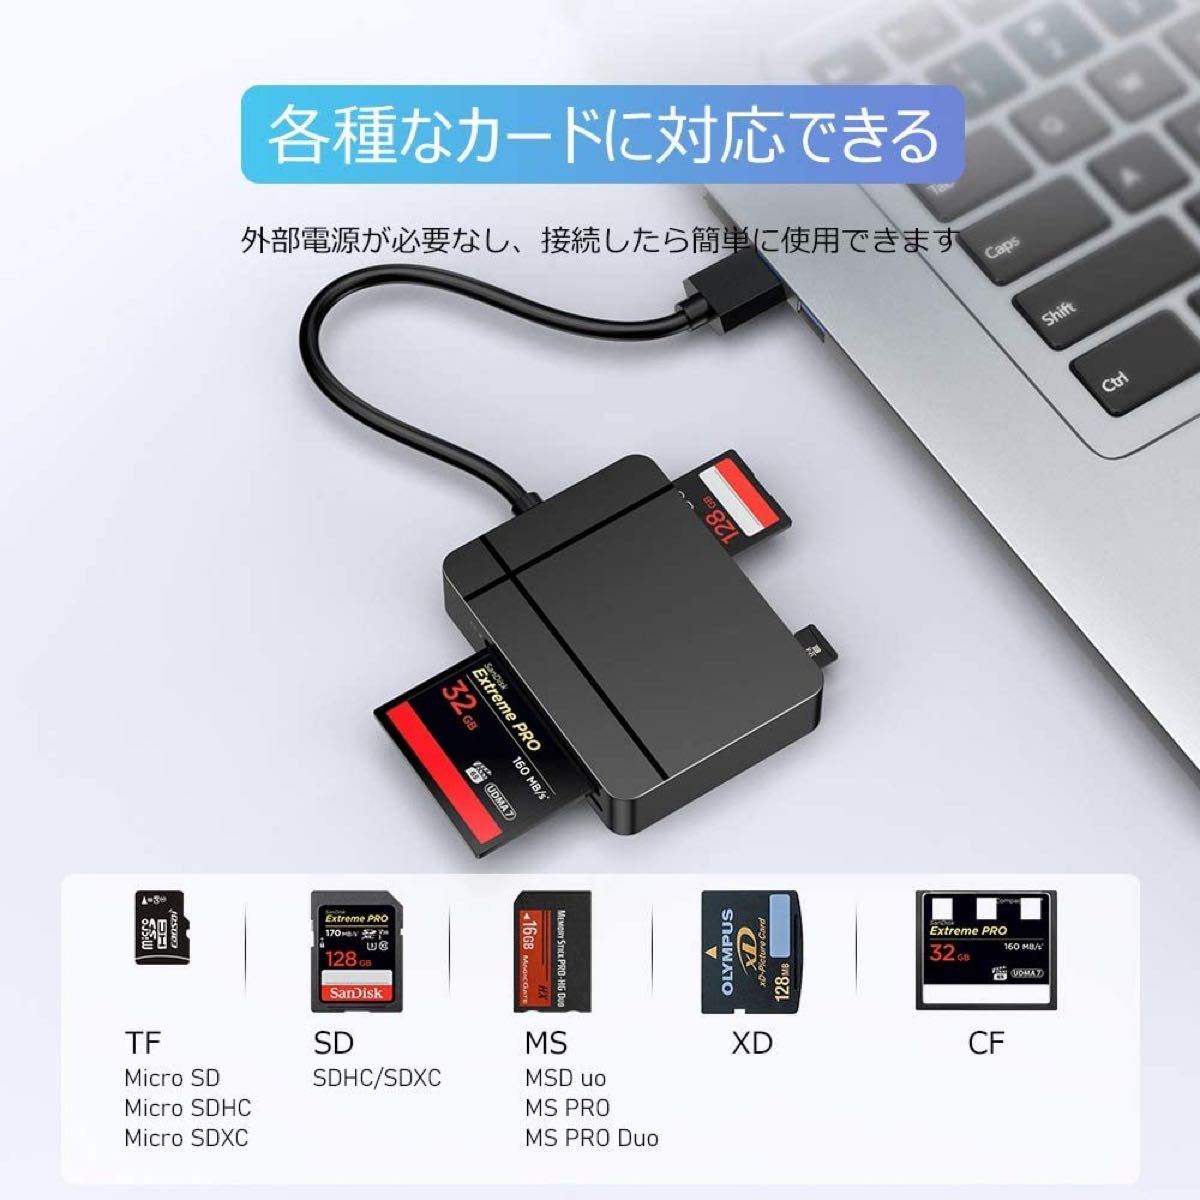 SD カード リーダー USB 3.0 マイクロ SD カード リーダー TF/Micro SD/SD/MS/XD/CF USB 